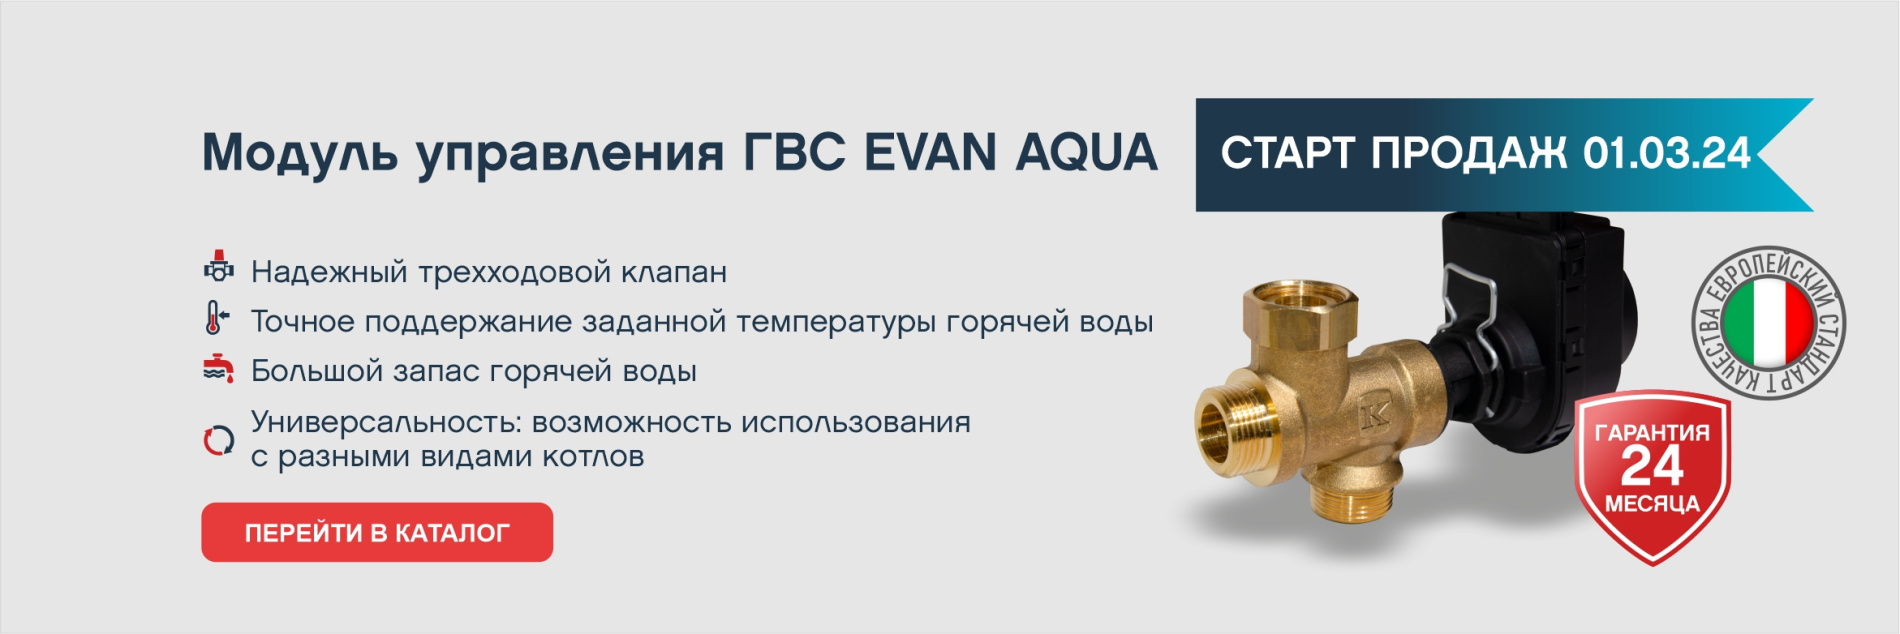 старт продаж Evan Aqua 24